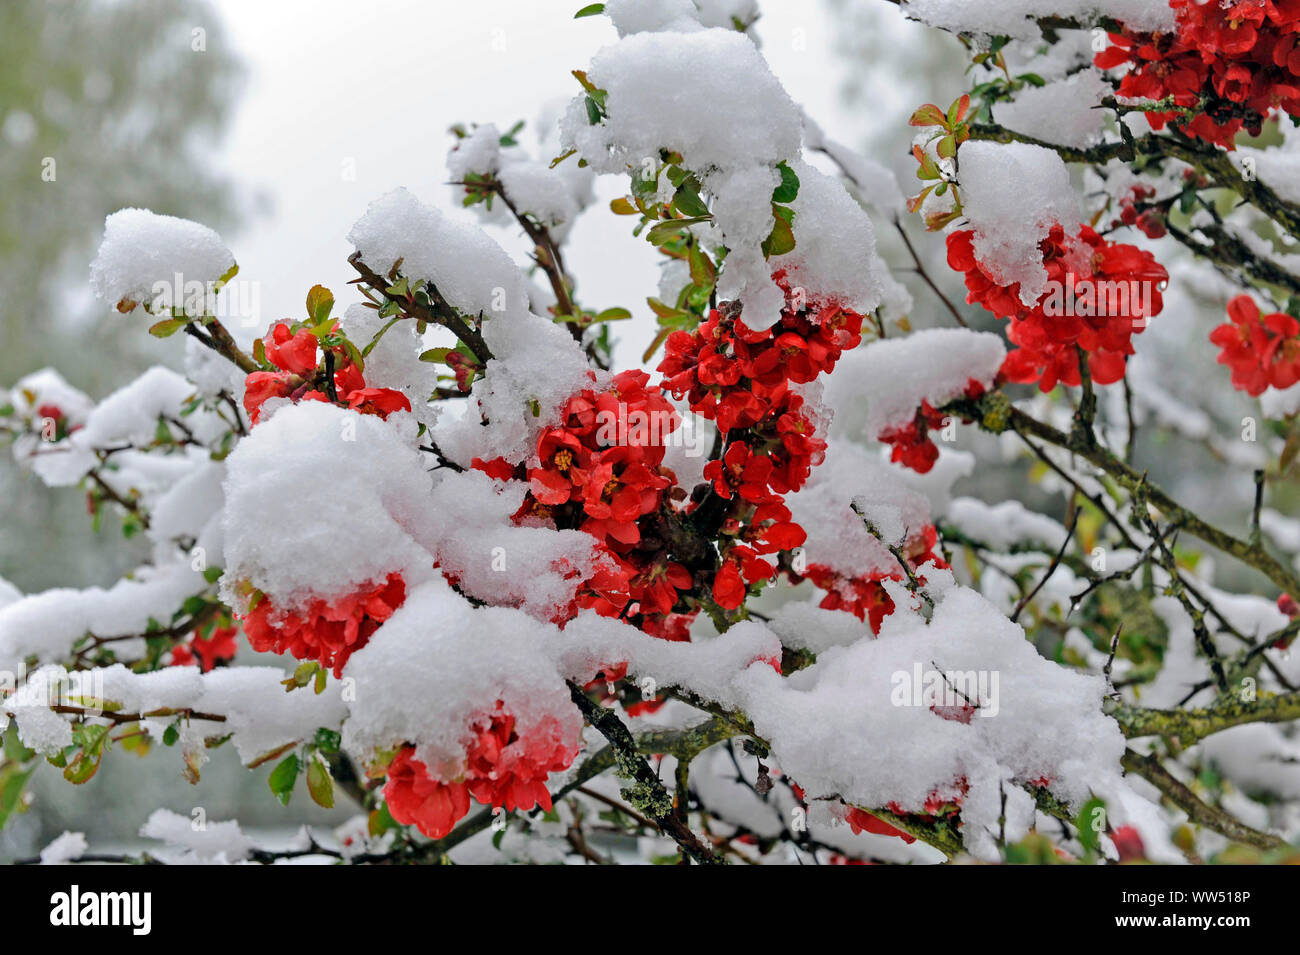 Les chutes de neige fraîche dans postwinter couvrant l'essor de l'arbuste rouge coing ornementales jardin au printemps Banque D'Images